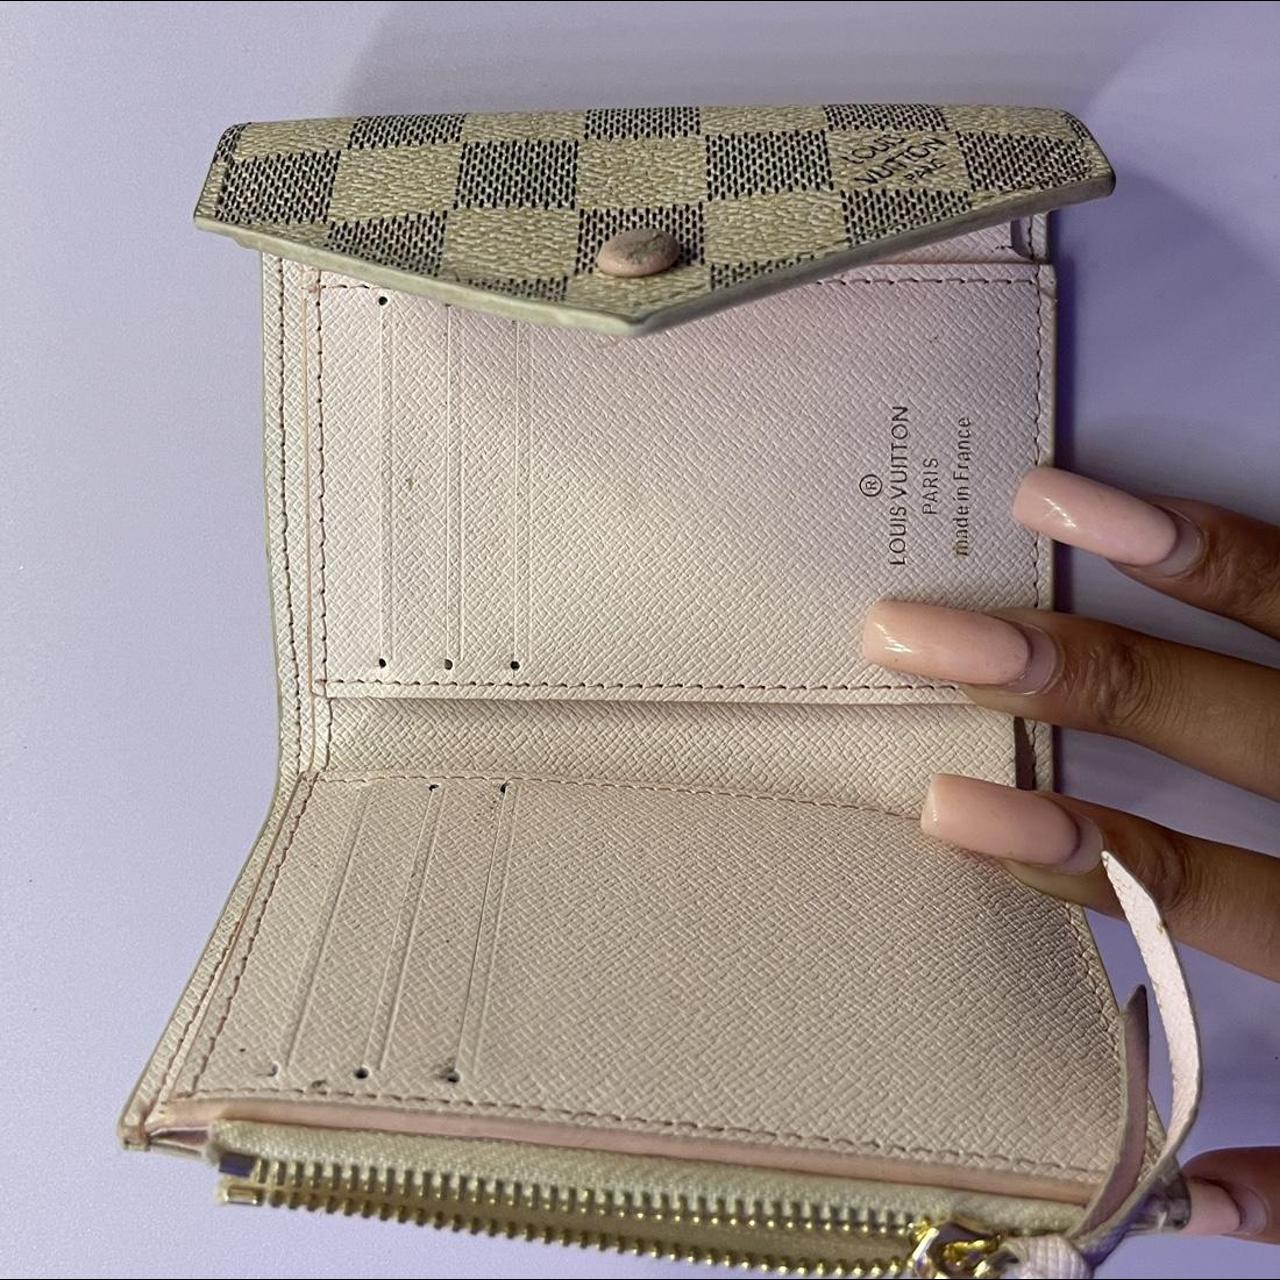 Louis Vuitton Victorine wallet. Rose ballerine - Depop